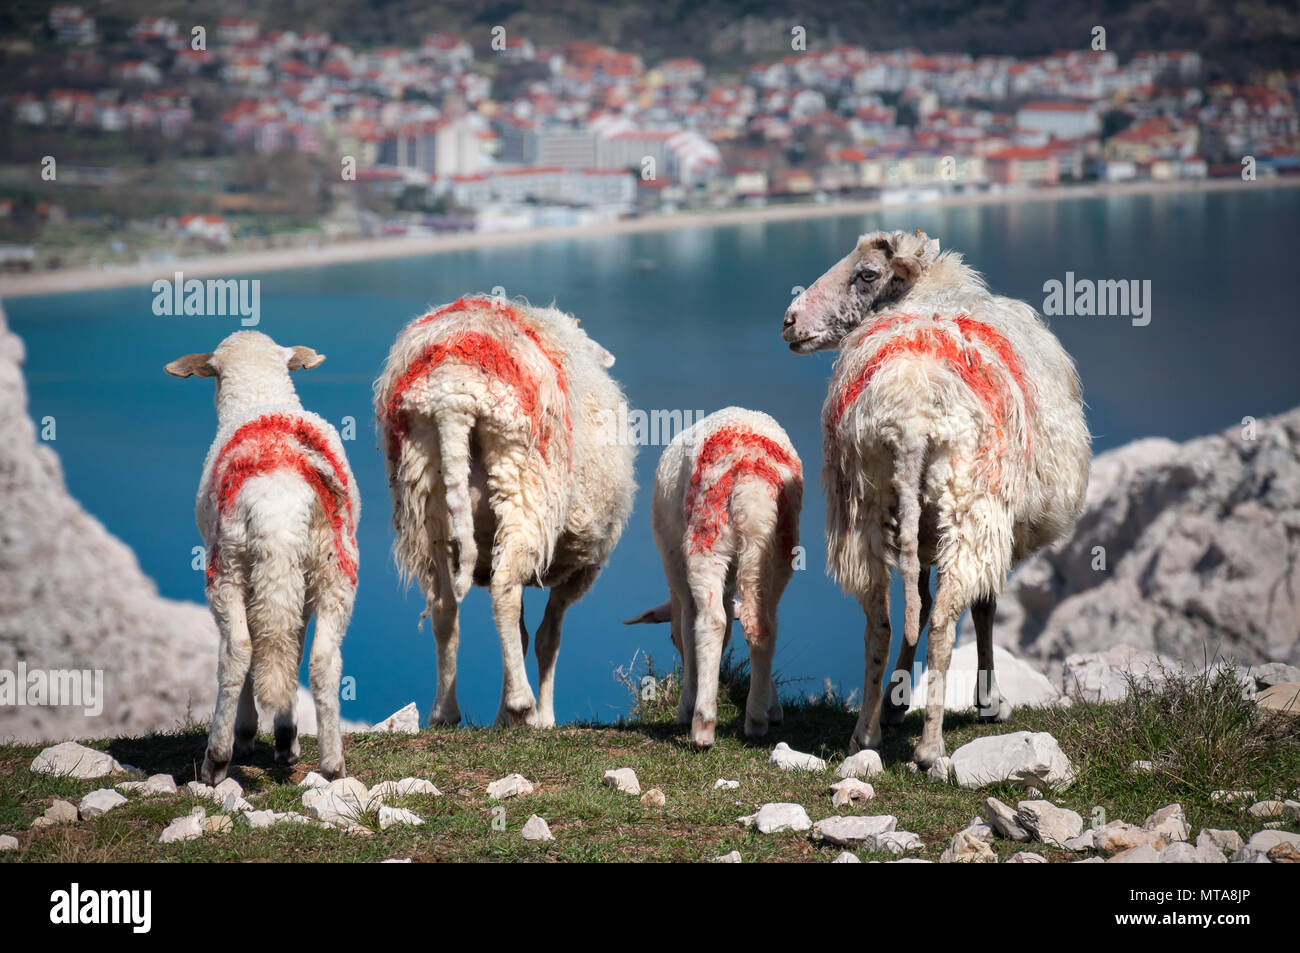 Quatre Moutons et agneaux, avec des marquages rouges peints sur leur peau, le pâturage au-dessus de la baie d'un bleu turquoise. Prise au dessus de Baska, village sur l'île de Krk Banque D'Images